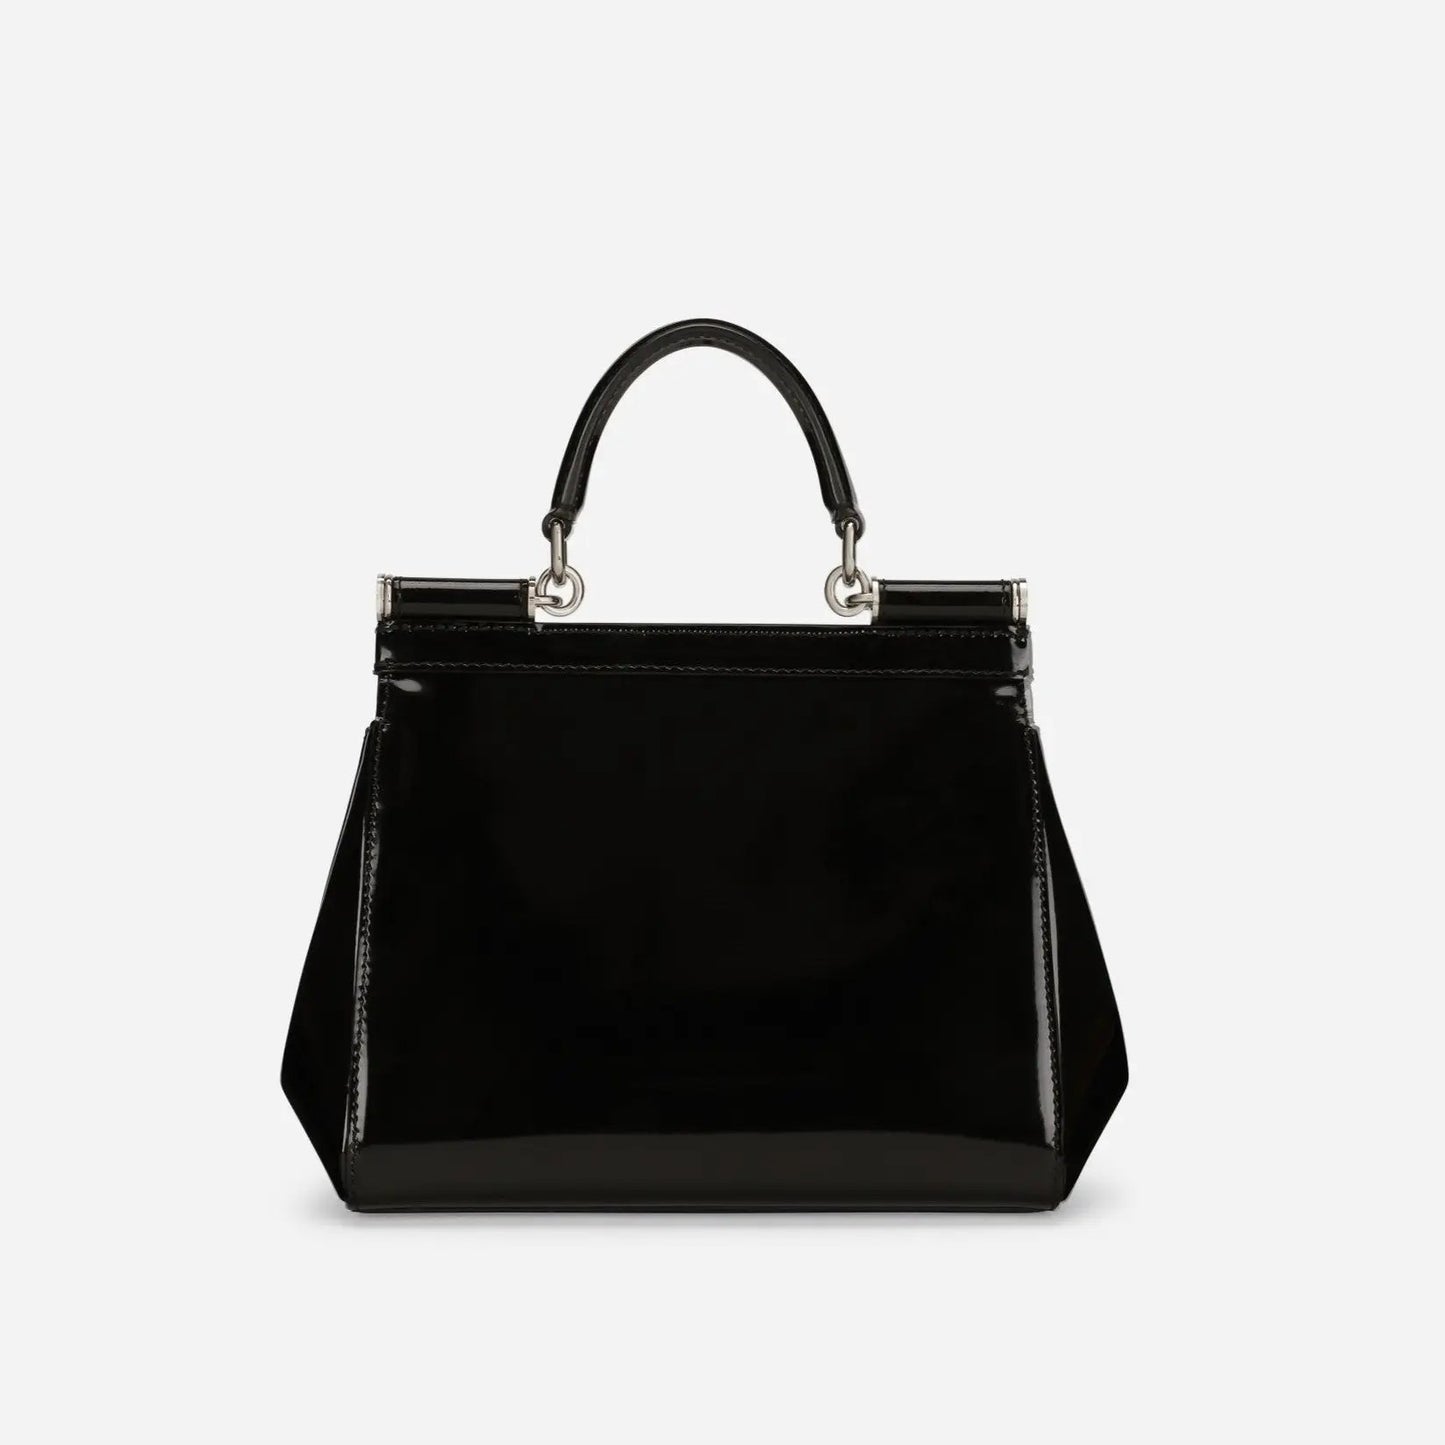 KIM D&G Sicily Medium Handbag in Glossy Black/Silver Handbags DOLCE & GABBANA - LOLAMIR